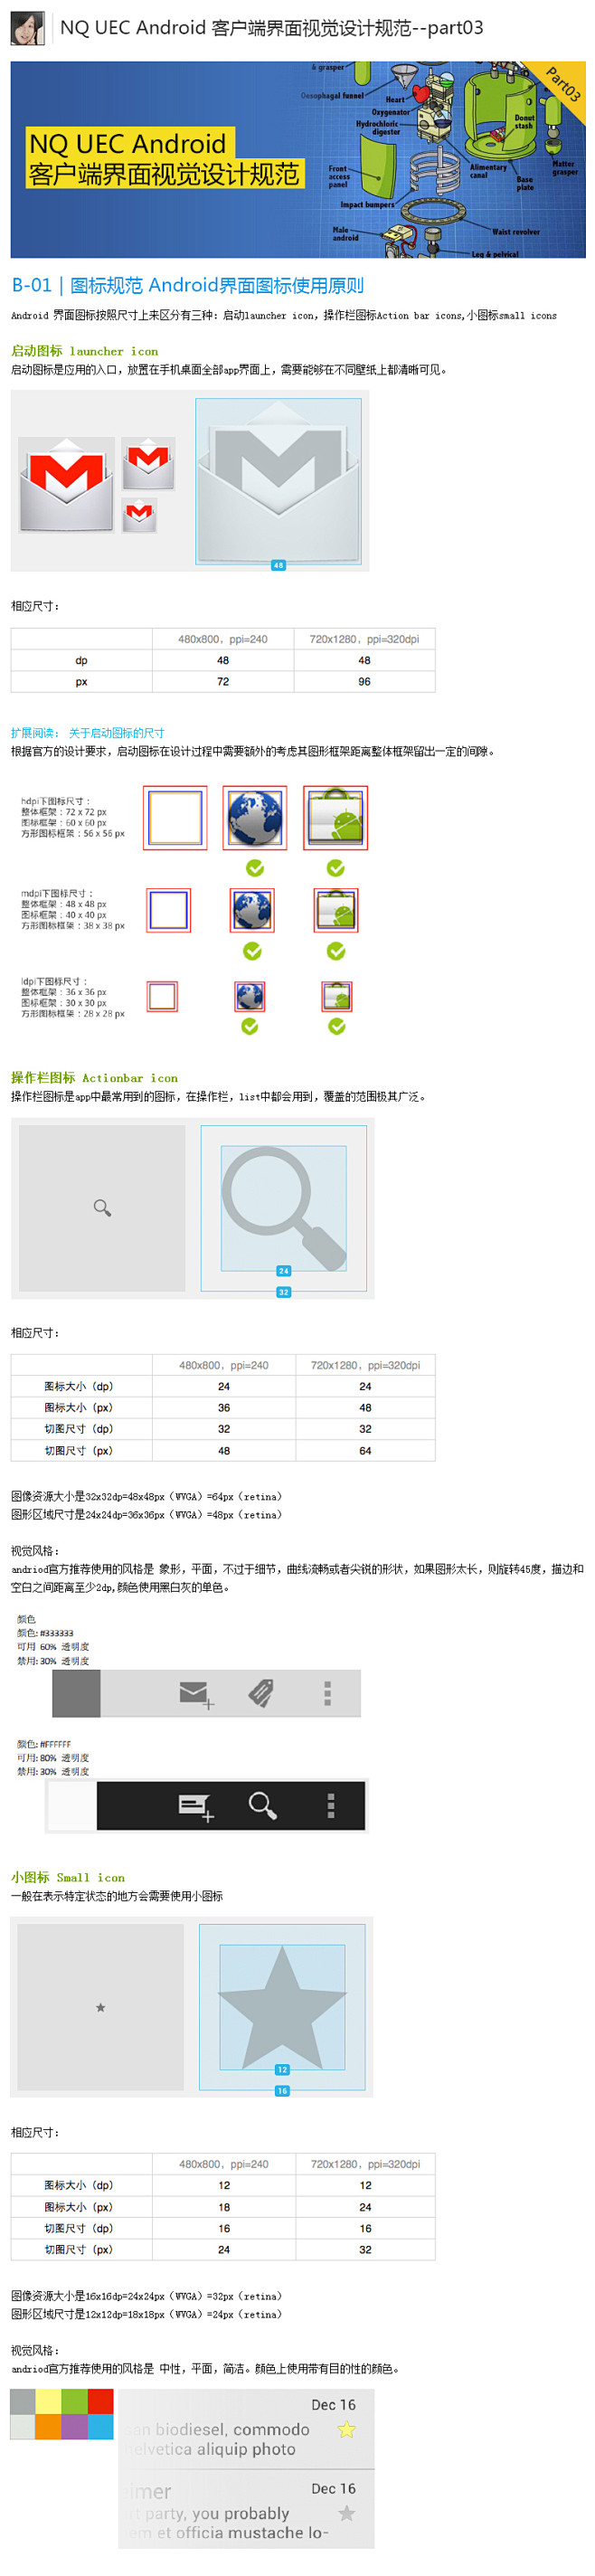 网秦UEC安卓客户端界面视觉设计规范-3...